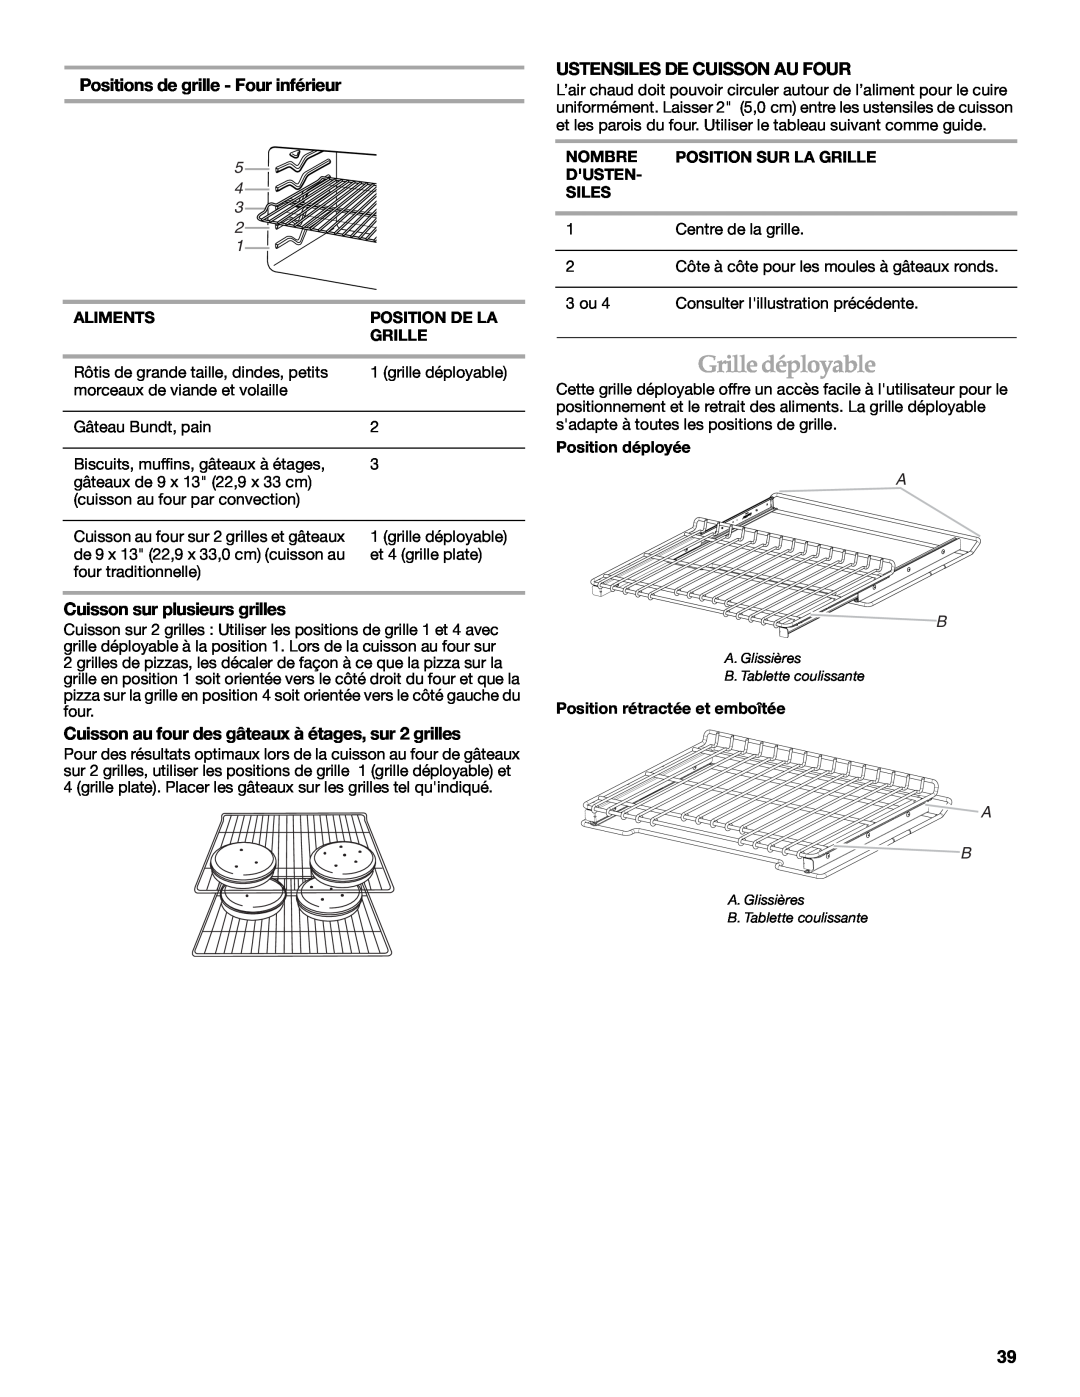 KitchenAid KDRS505XSS manual Grille déployable, Positions de grille - Four inférieur, Ustensiles De Cuisson Au Four 